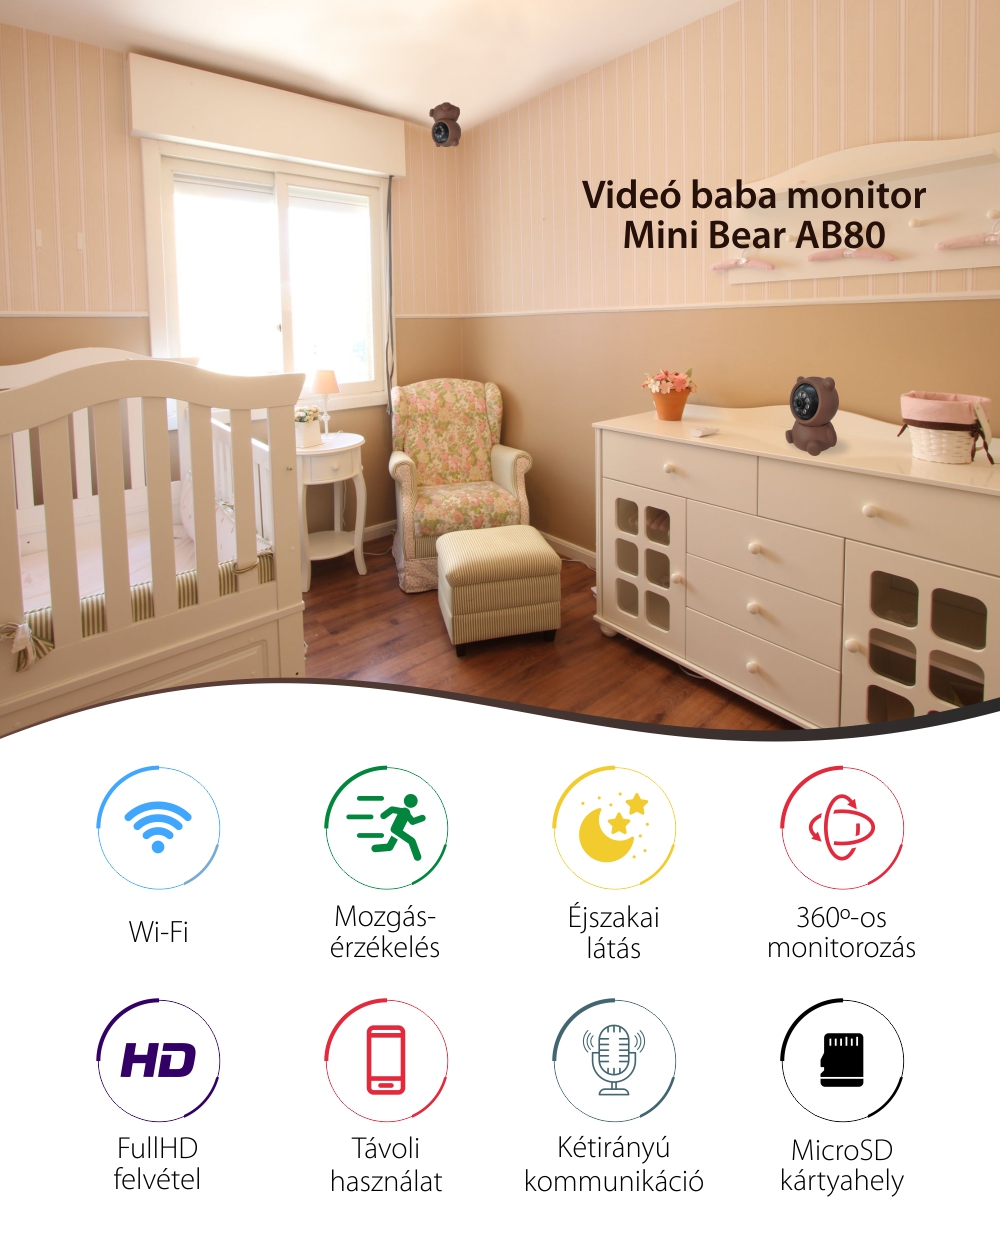 Bébiőr Video AB80 Wi-Fi-vel, Mozgásérzékelés, Éjszakai látás, Full HD felvétel, 360 fokos monitorozás, MicroSD foglalat, Rózsaszín